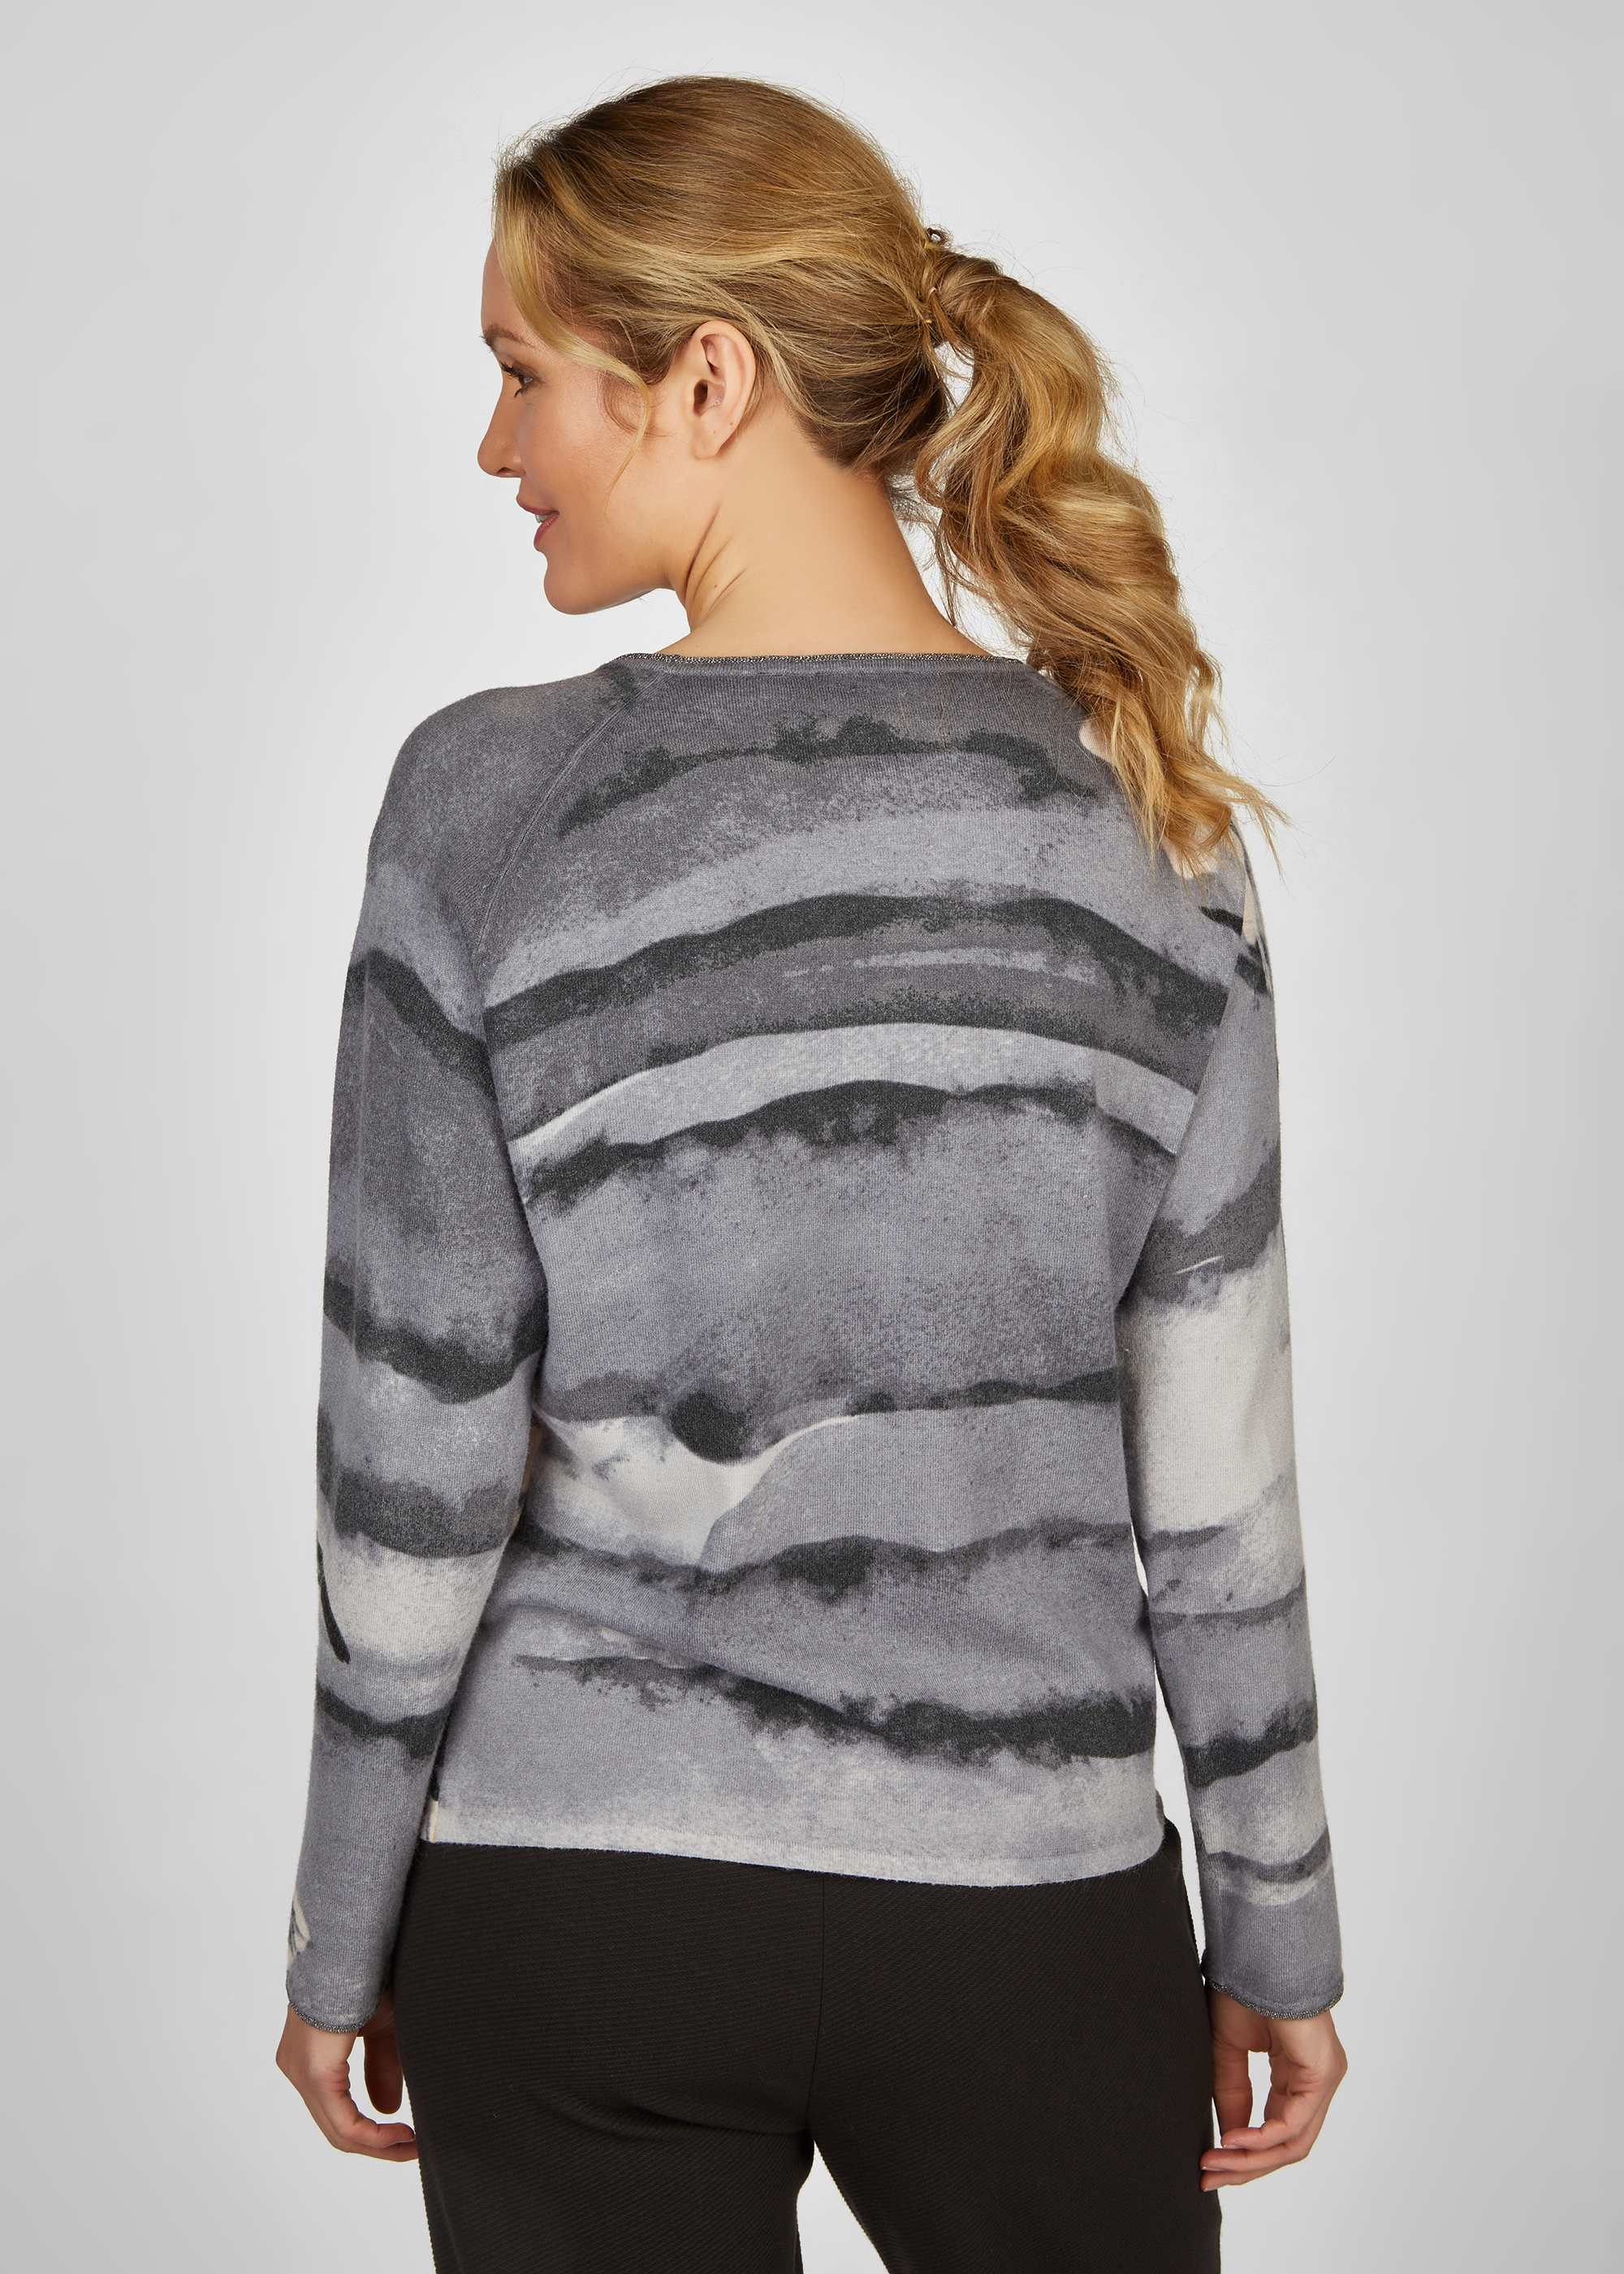 Pullover mit Platzierter Print